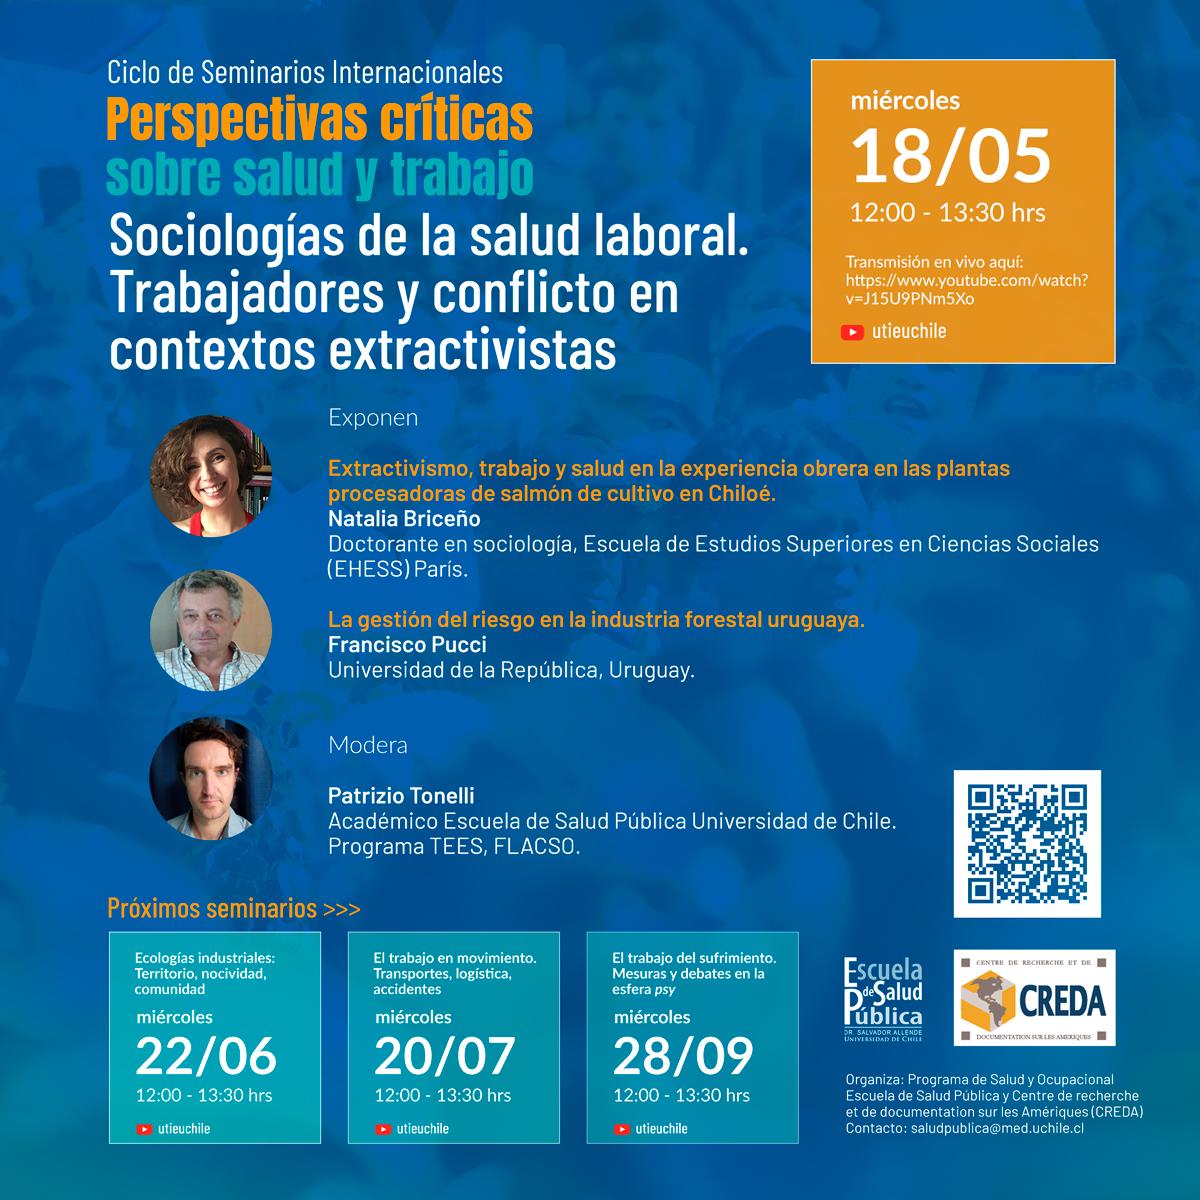 "Sociologías de la salud laboral. Trabajadores y conflicto en contextos extractivistas"